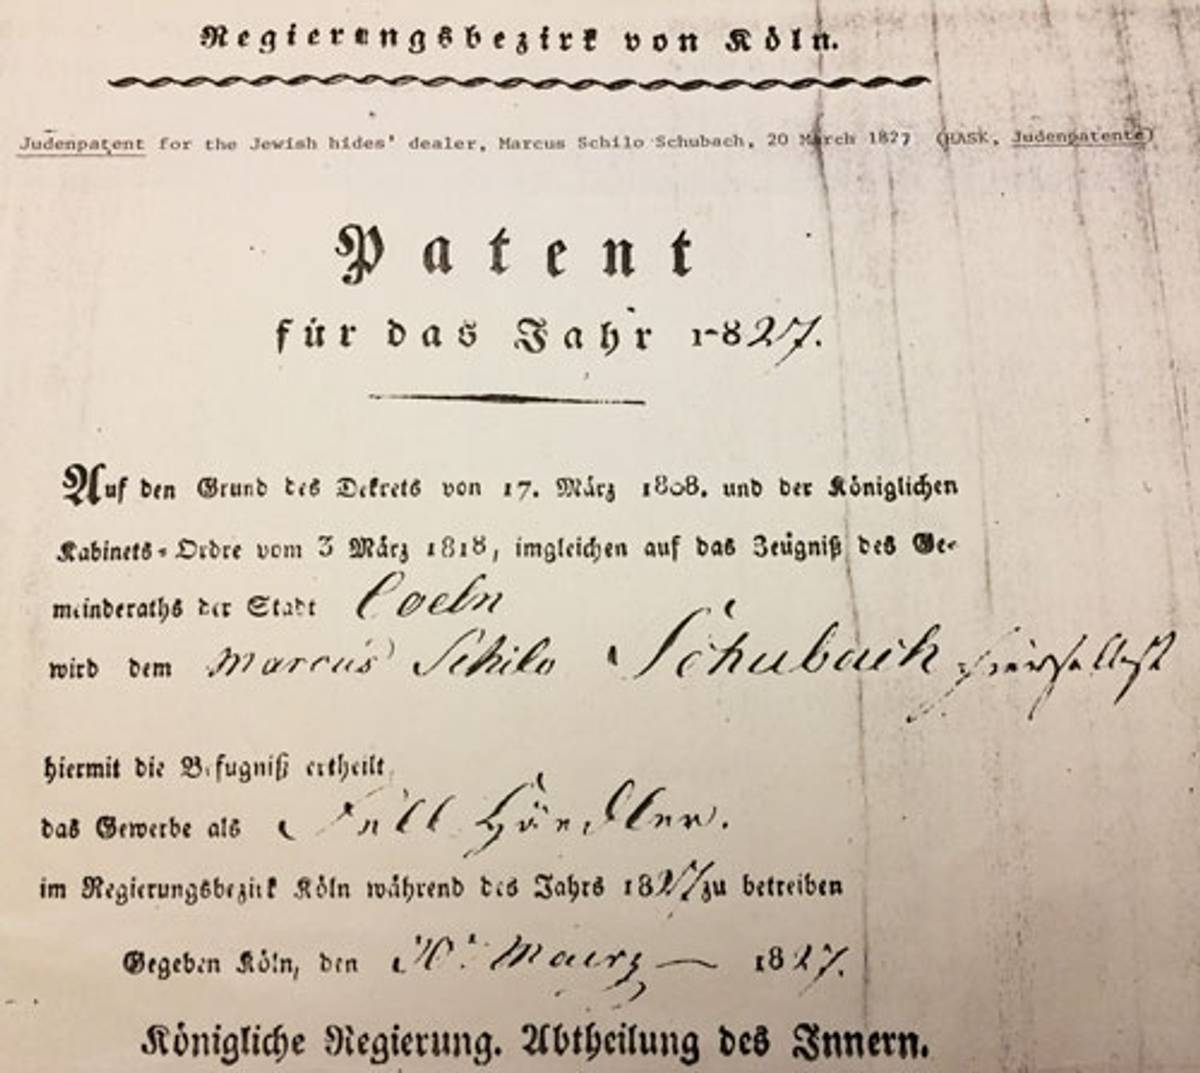 Jew-license for the Jewish hides dealer Marcus Schilo Schubach, 20 March 1827 (Historisches Archiv der Stadt Köln)